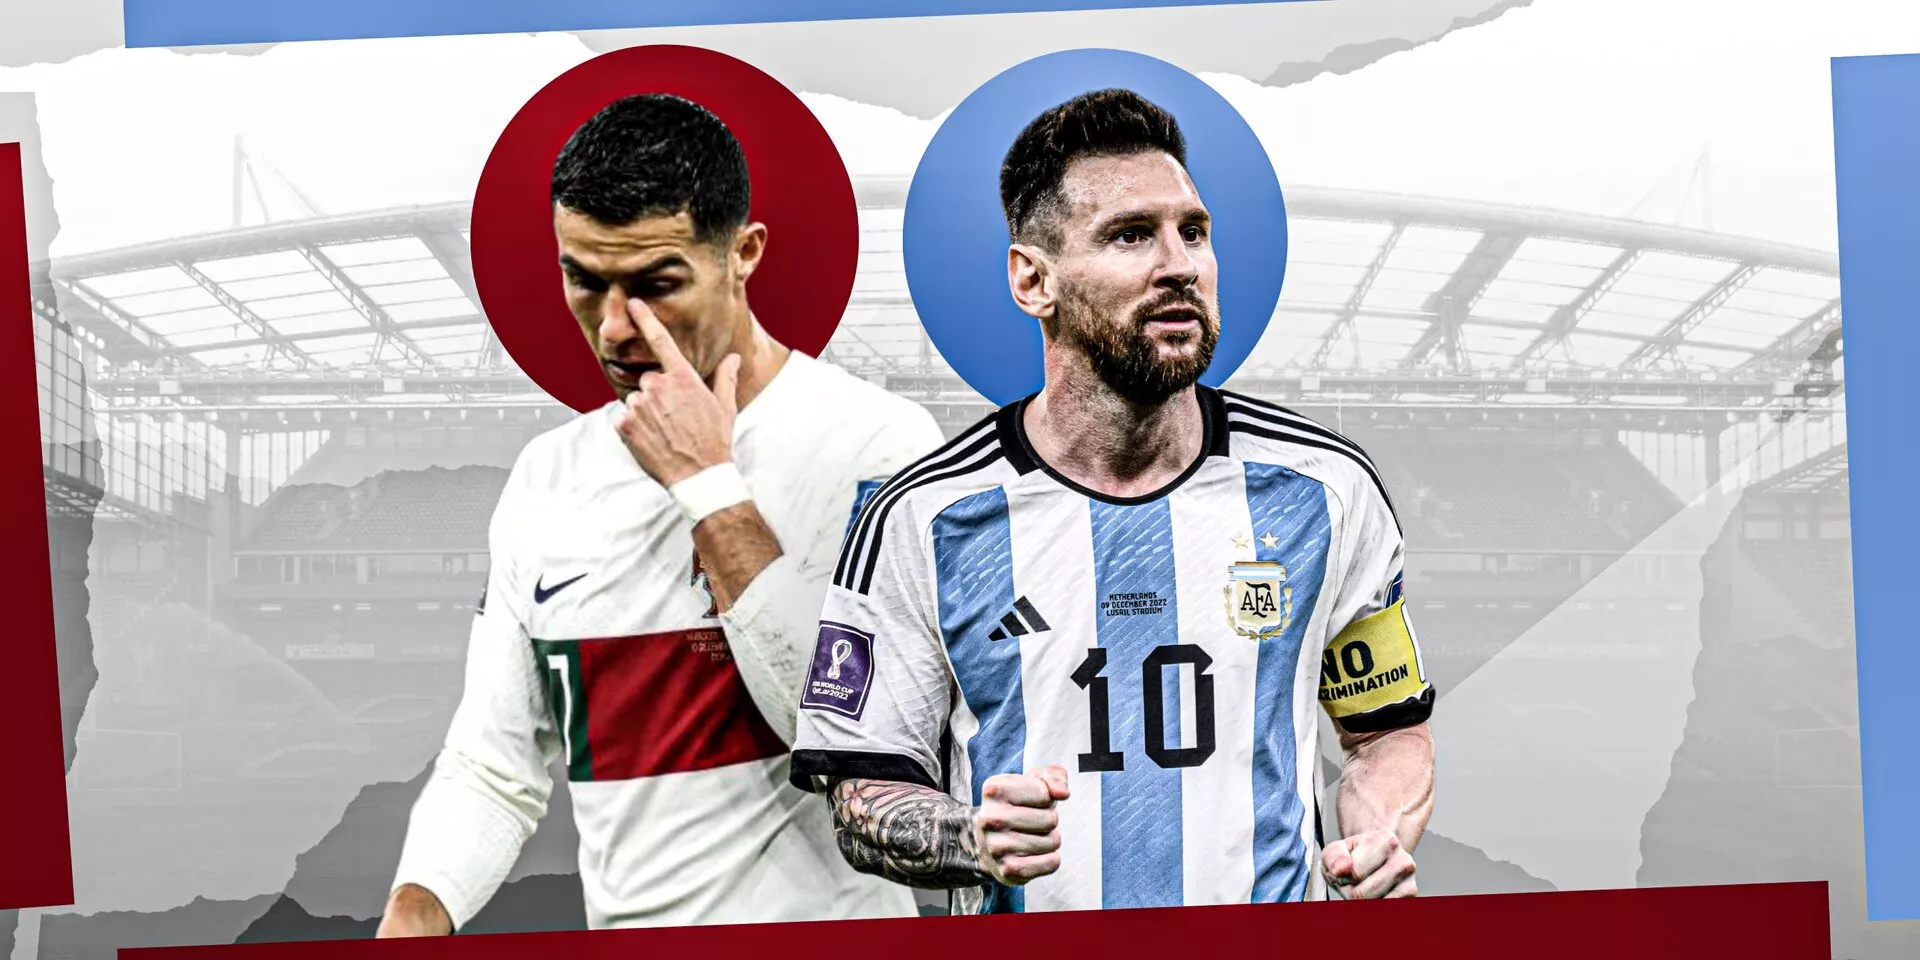 World Cup 2022: Lionel Messi vs Cristiano Ronaldo and our primal